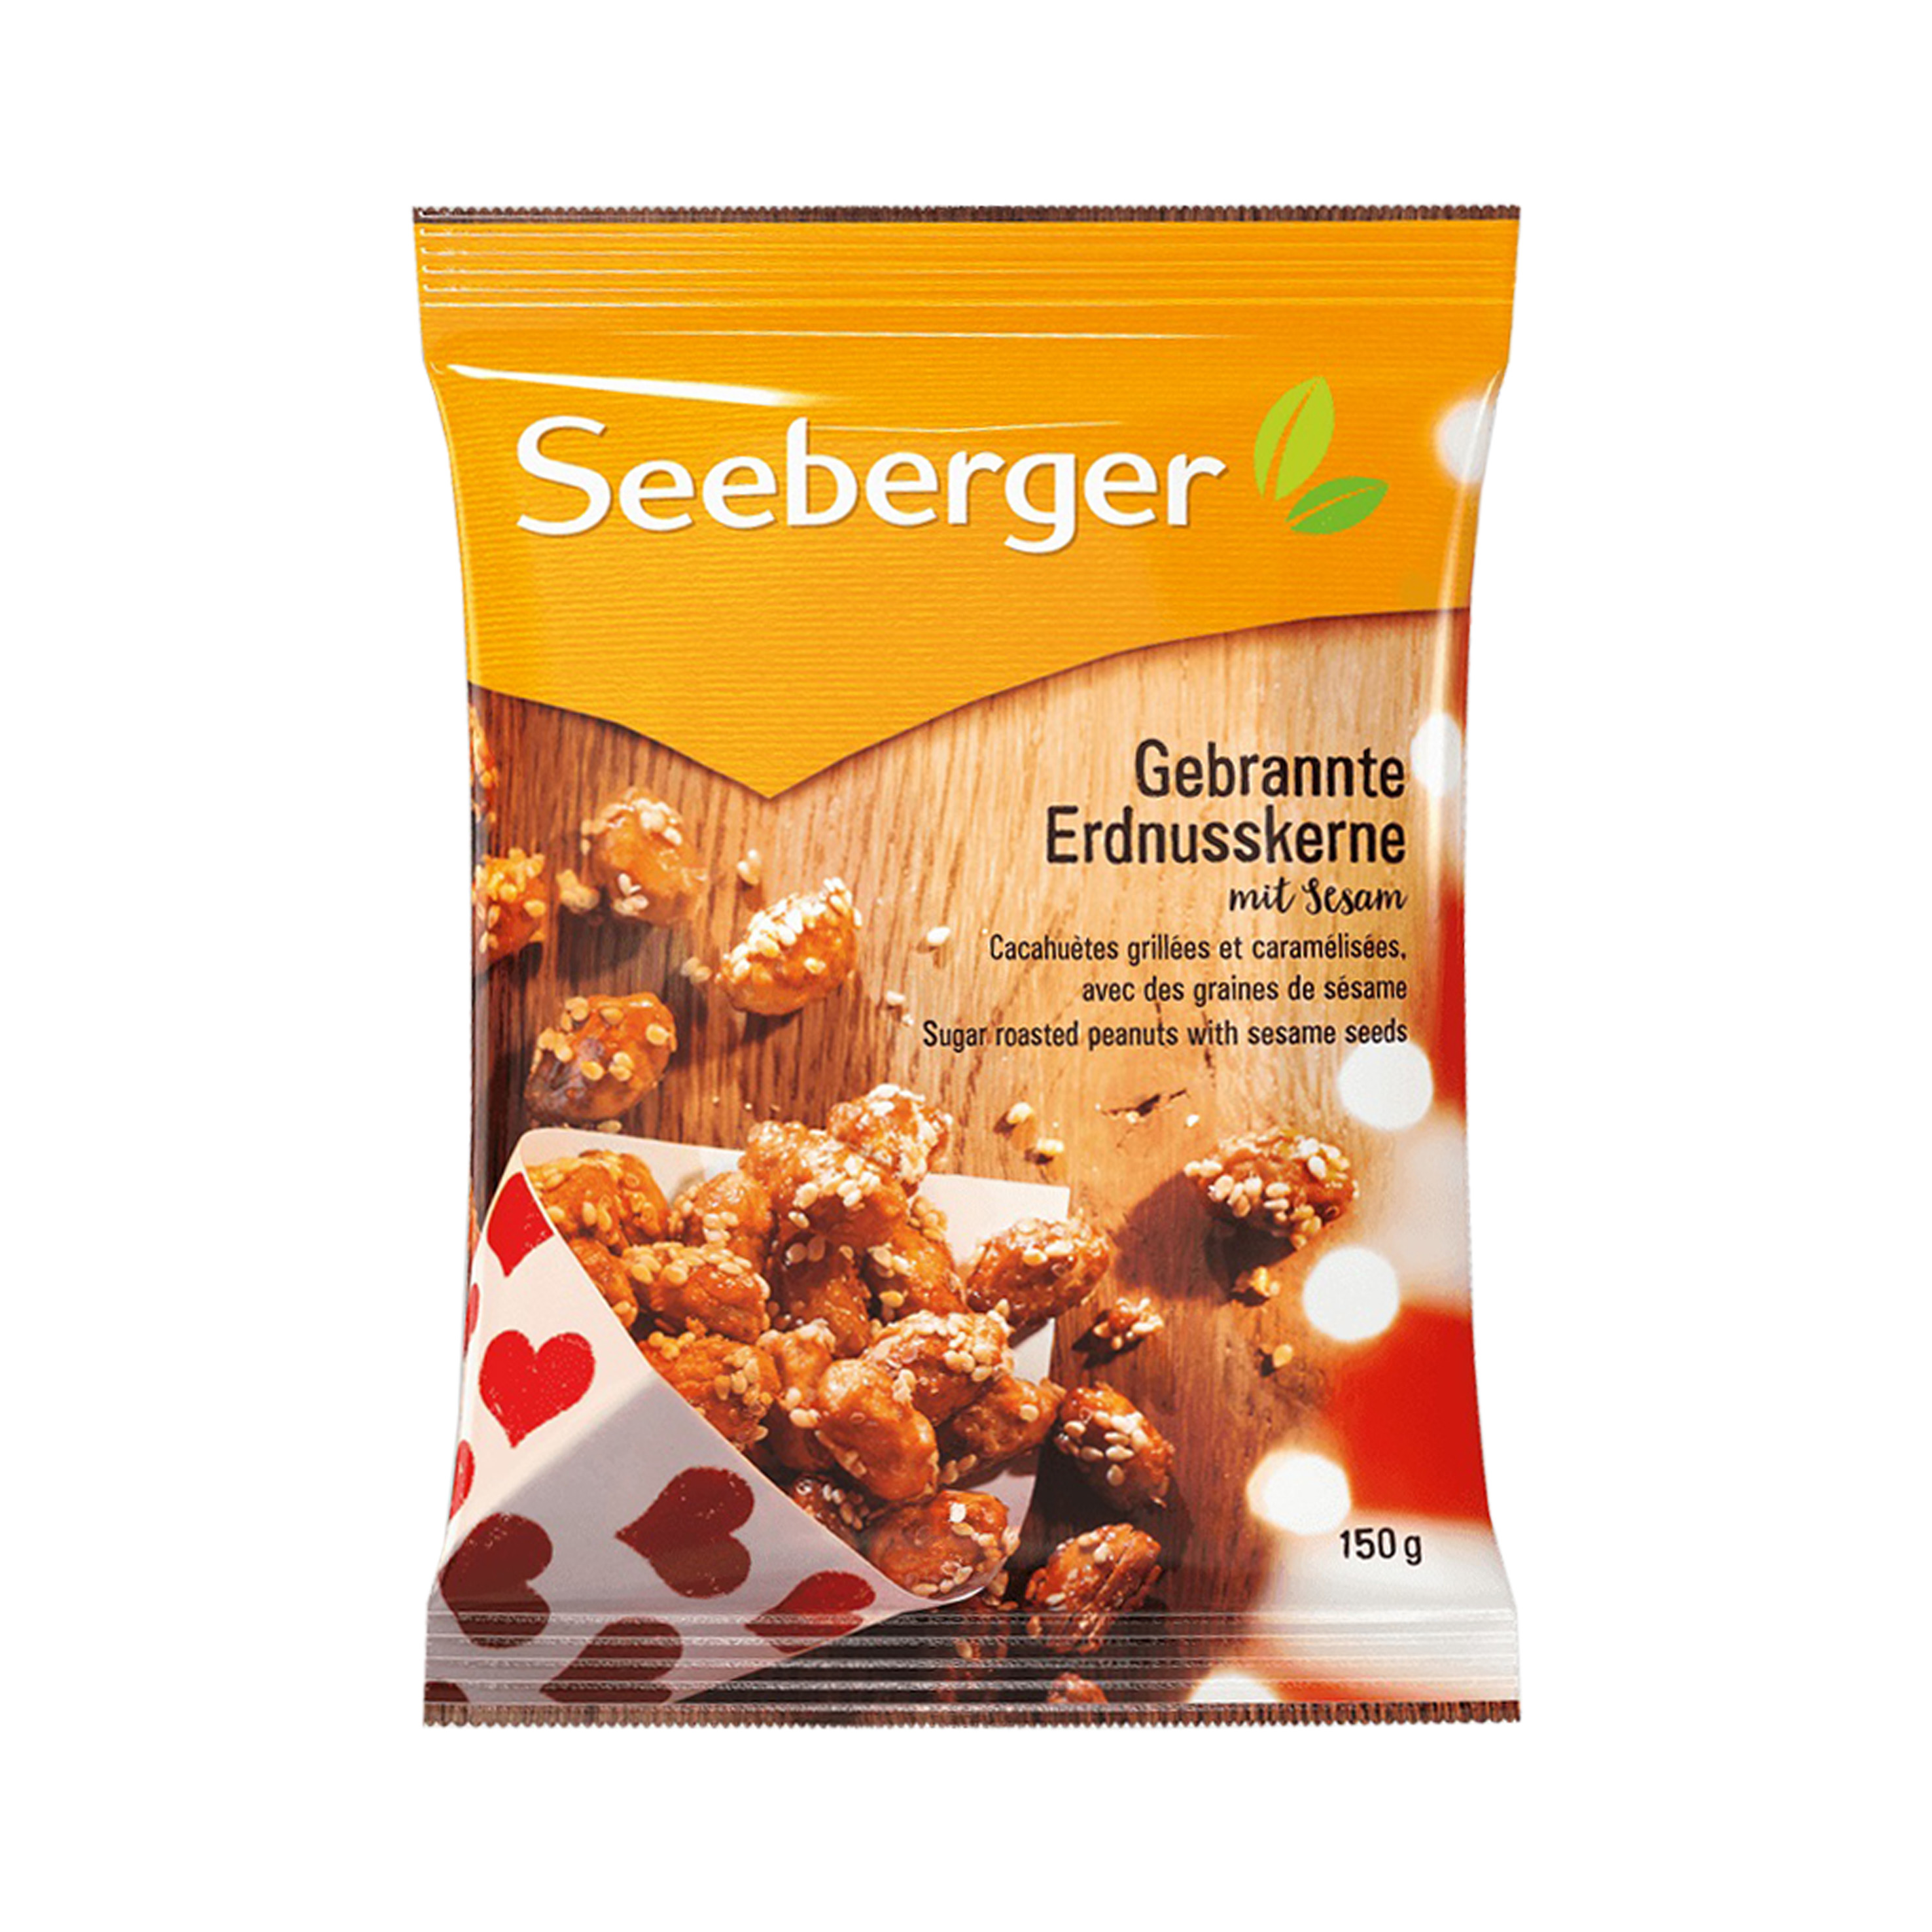 Seeberger cacahuete garrapiñado 150g